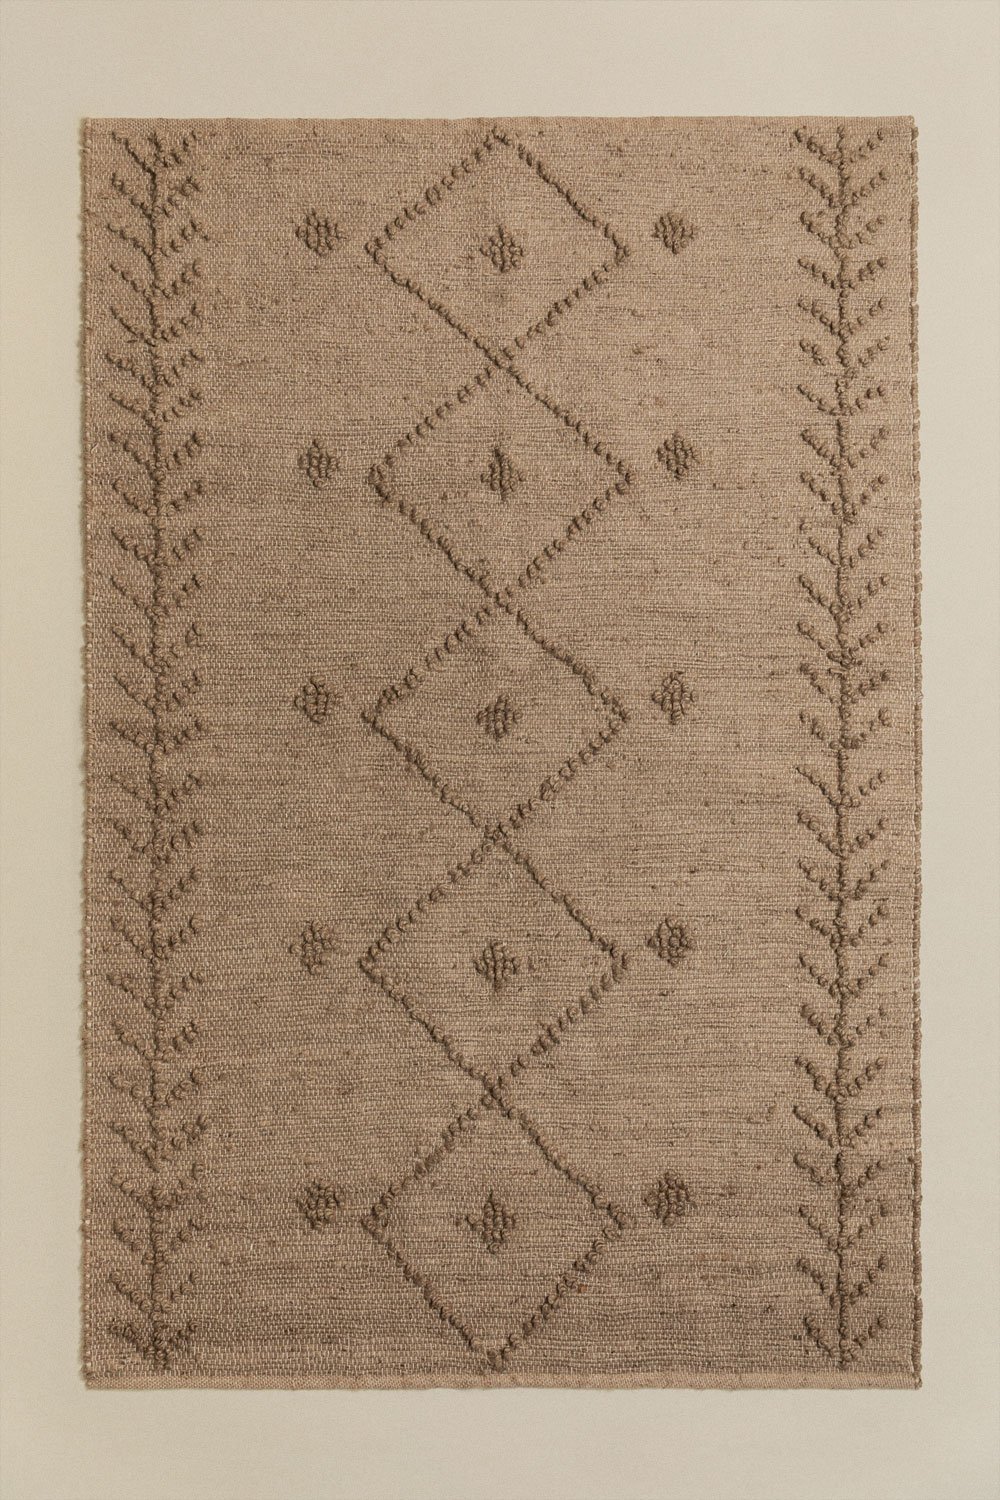 Tapis en jute (180x120 cm) Golchen  , image de la galerie 1